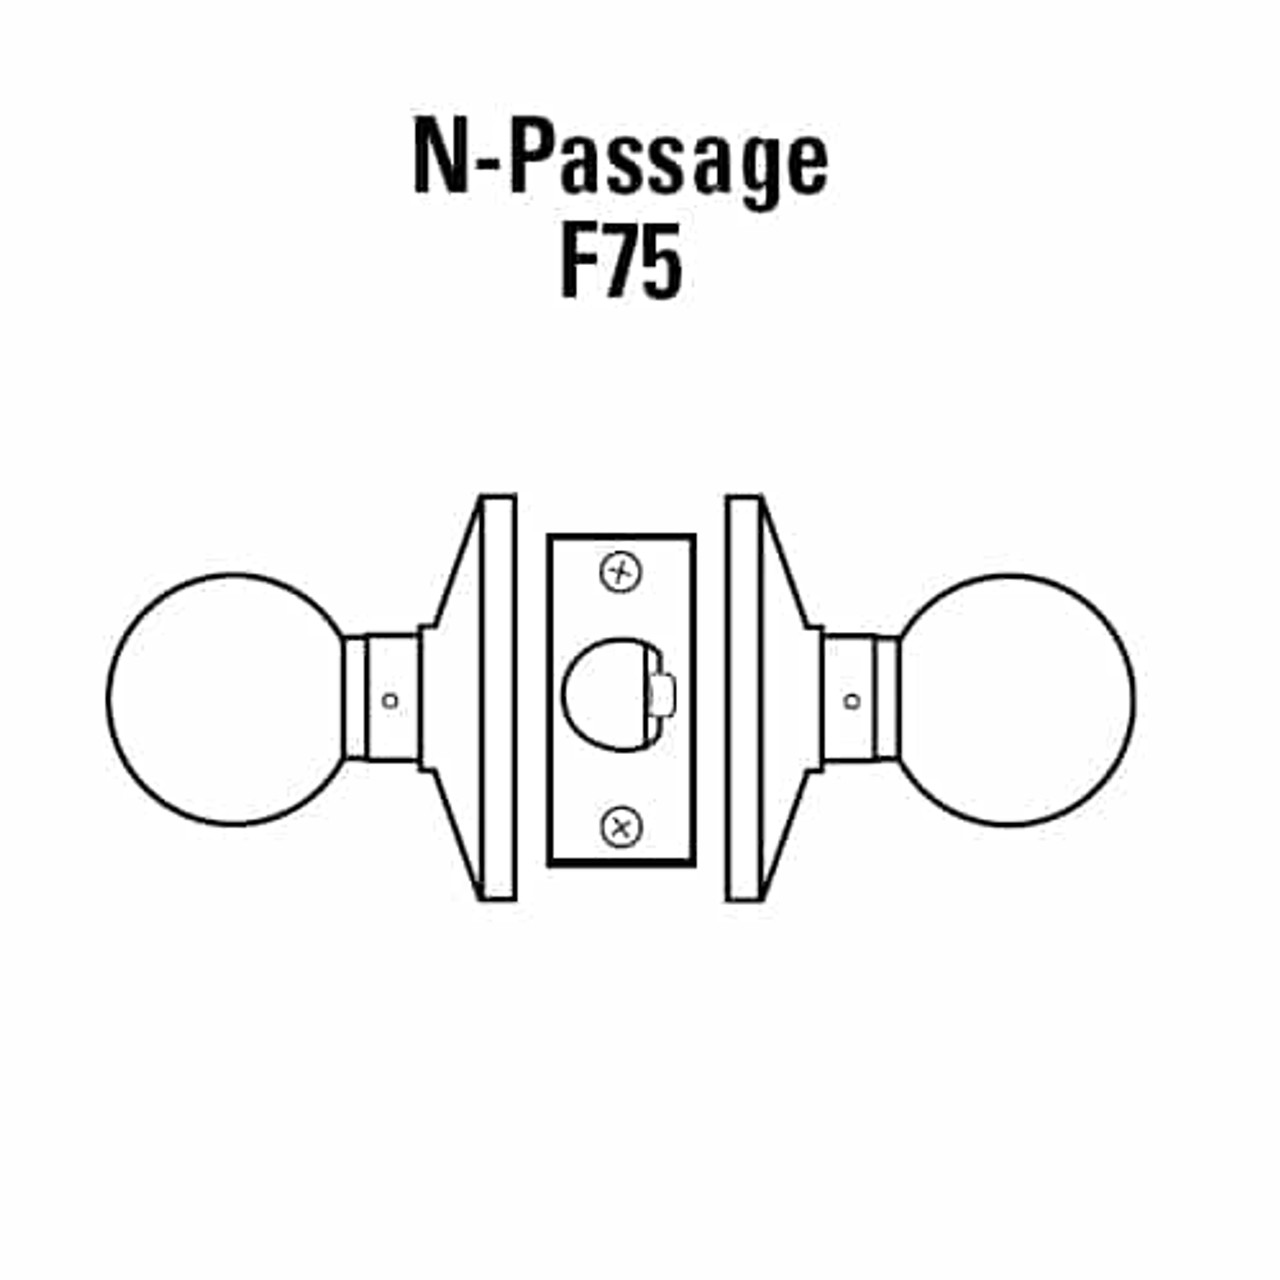 6K20N4DSTK612 Best 6K Series Passage Medium Duty Cylindrical Knob Locks with Round Style in Satin Bronze